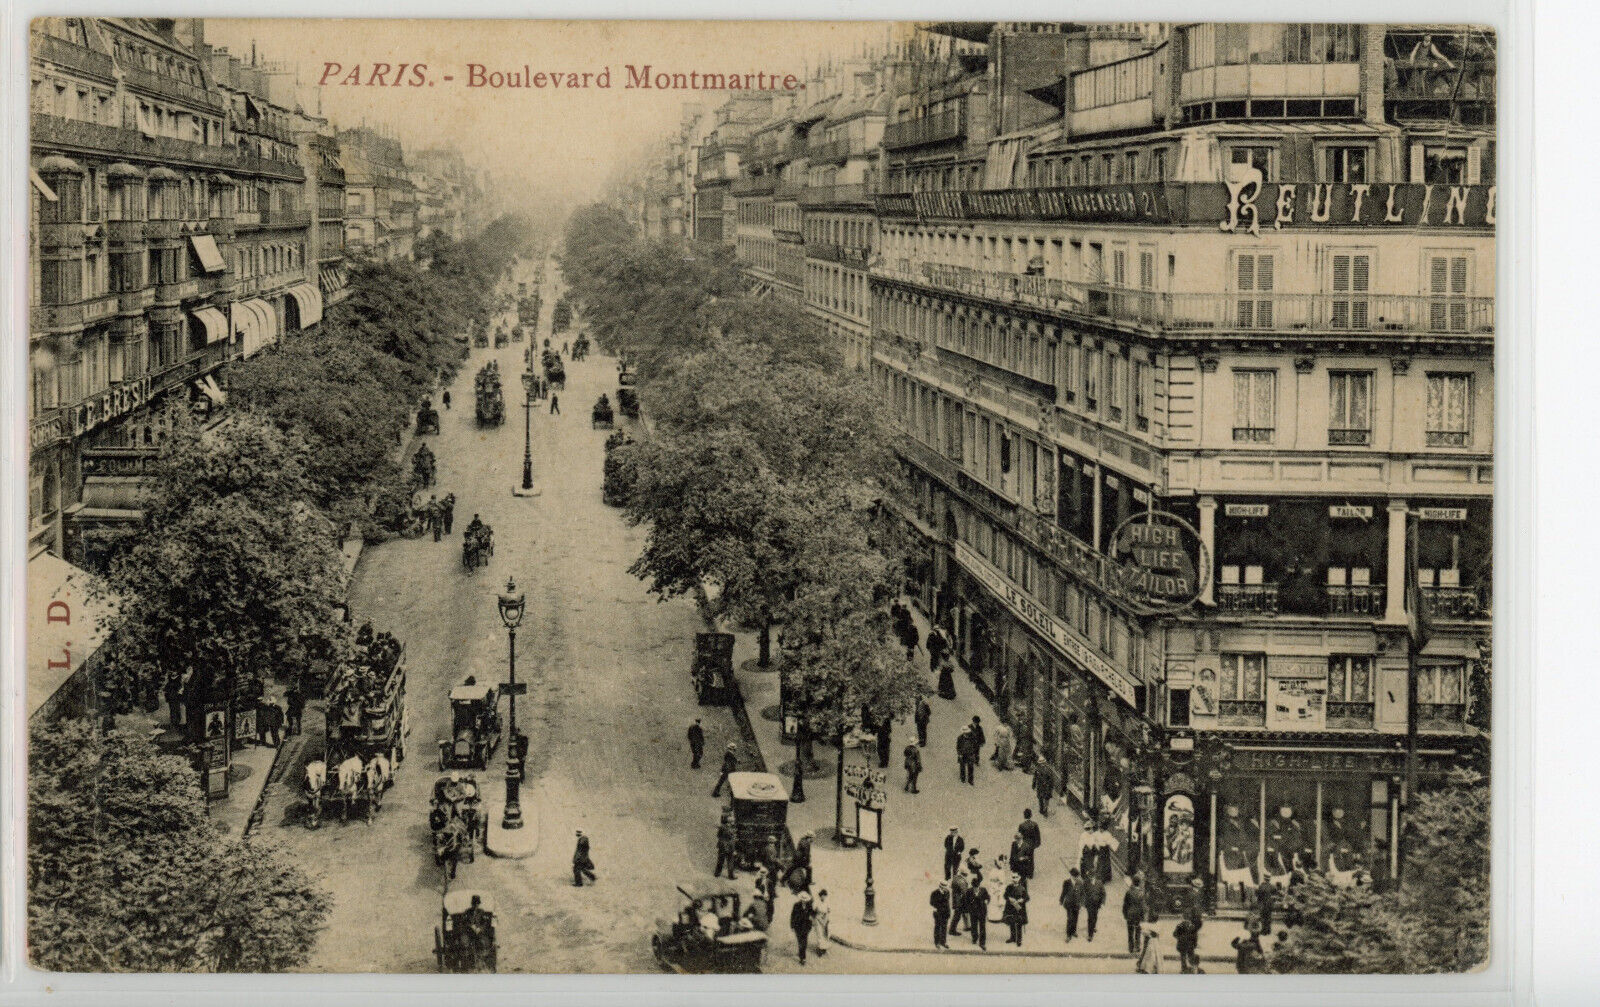 Boulevard Montmartre, 2nd / 9th arr., Paris, France, vintage 1910 postcard